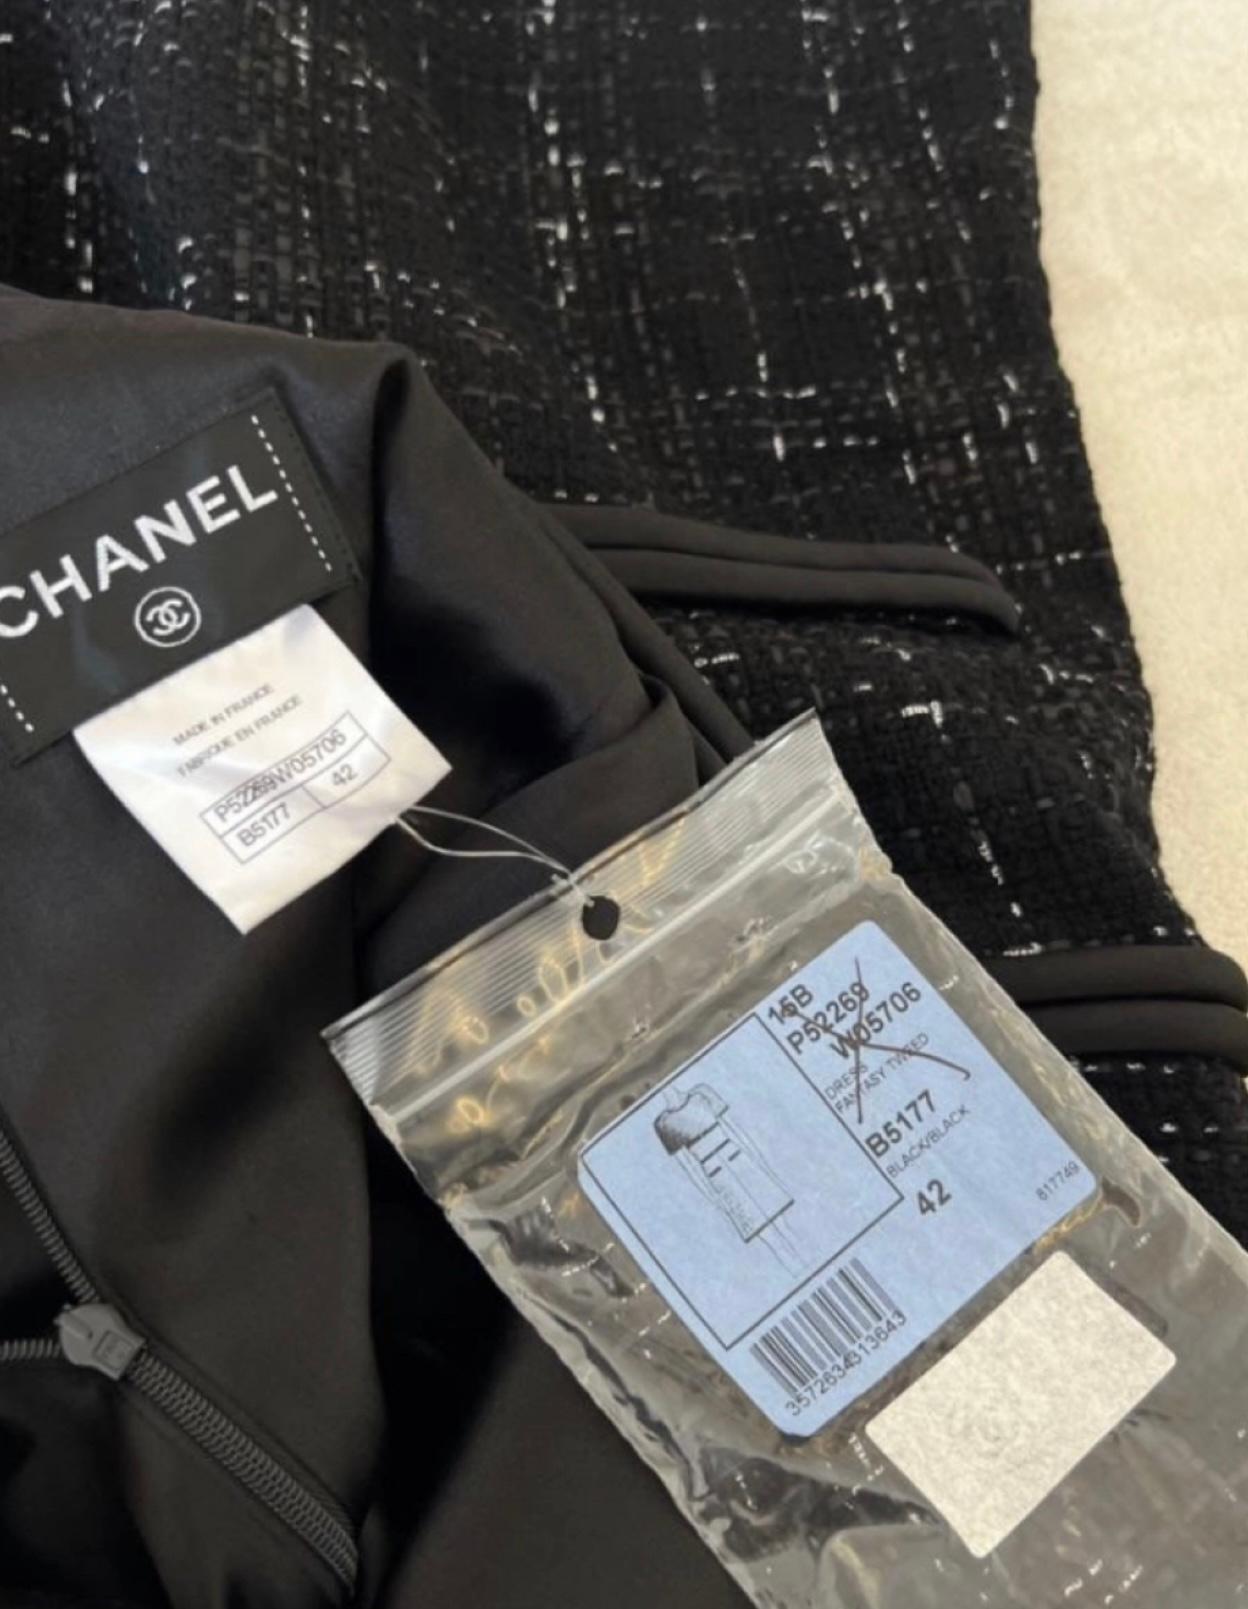 Schwarzes Tweedkleid von Chanel mit CC-Logo-Charme an der Tasche.
Größe 42 FR, Etiketten angebracht